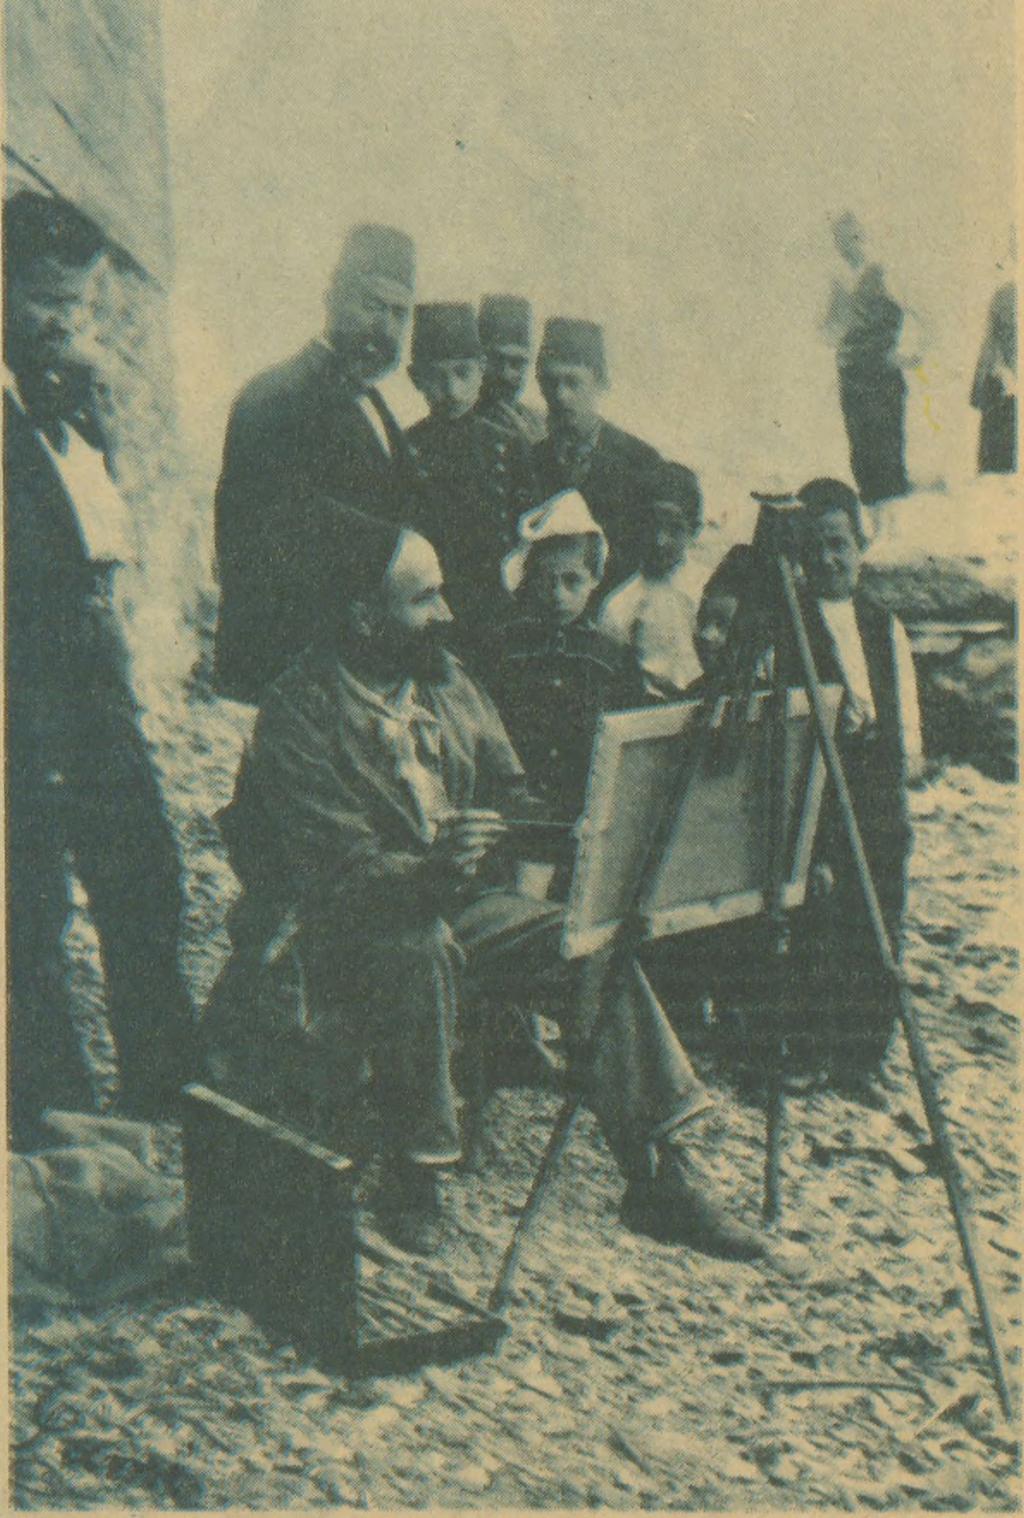 İtalyanların 1911 yılında, Osmanlı topraklarından olantrablusgarb a (bugünkü Libya) saldırış ıı üzerine Türkiye büyük bir. çalkantı içine dt Iştü.